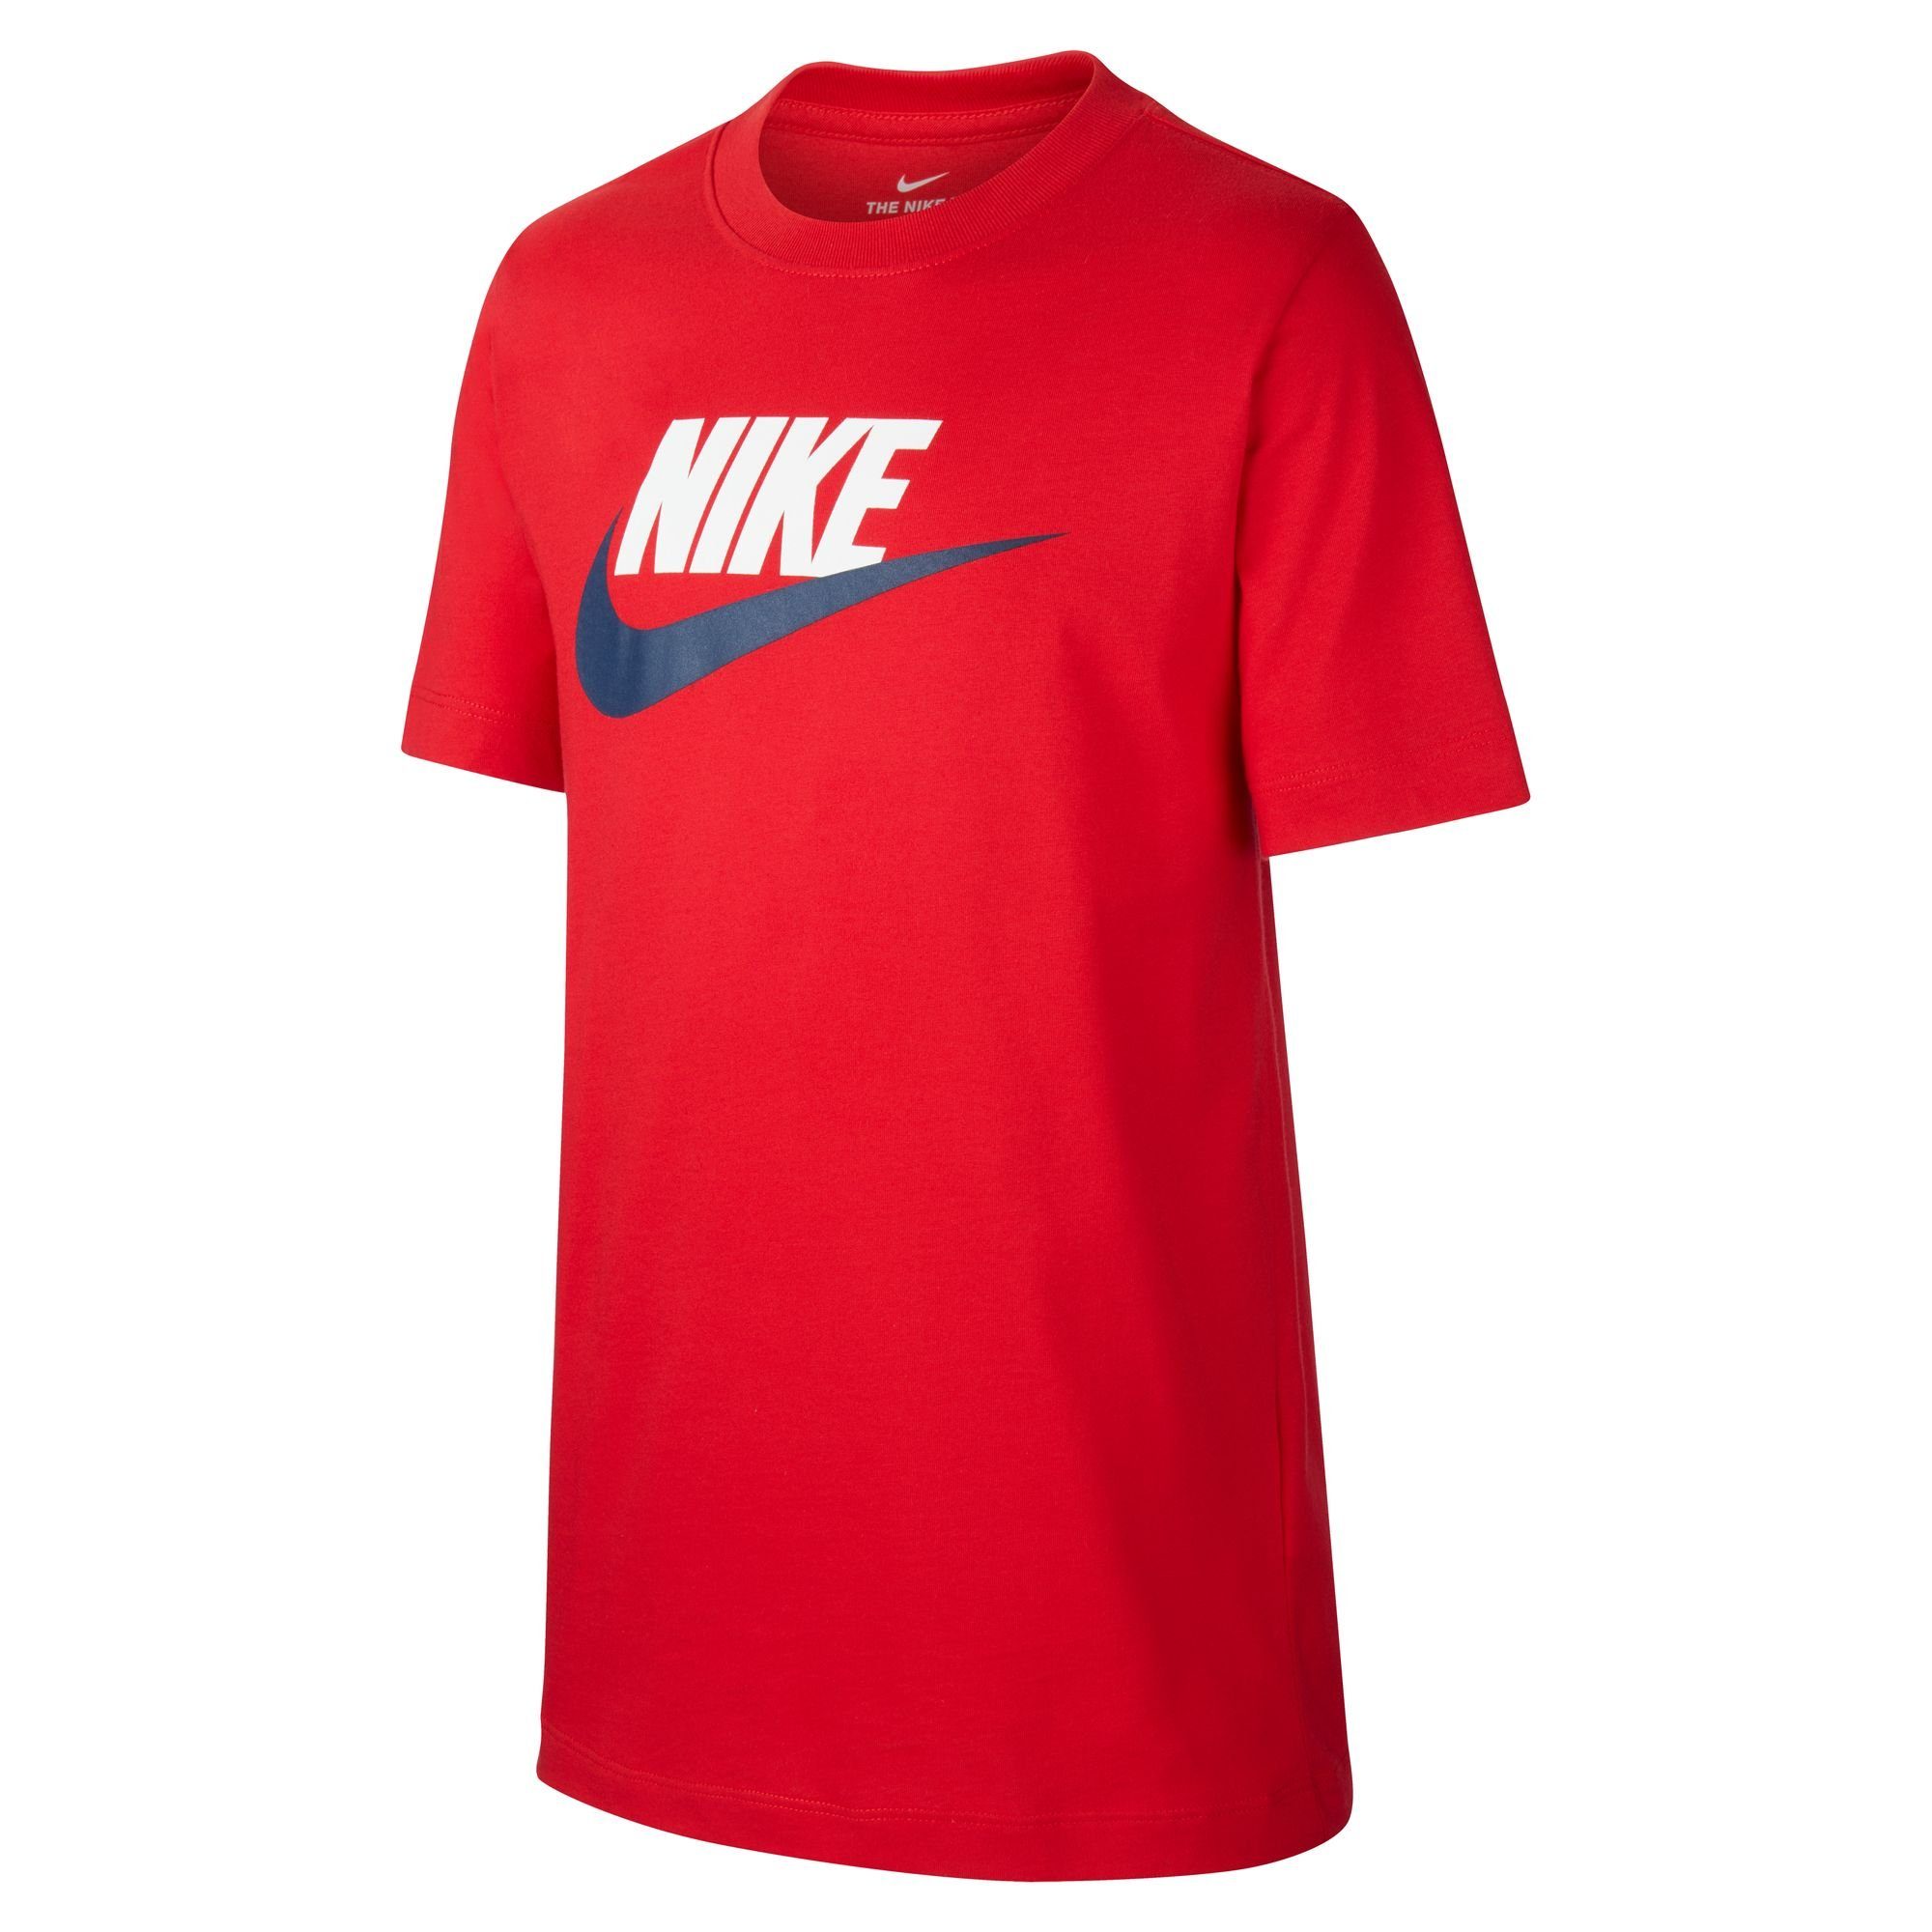 Nike Sportswear T-Shirt T-SHIRT rot KIDS' BIG COTTON